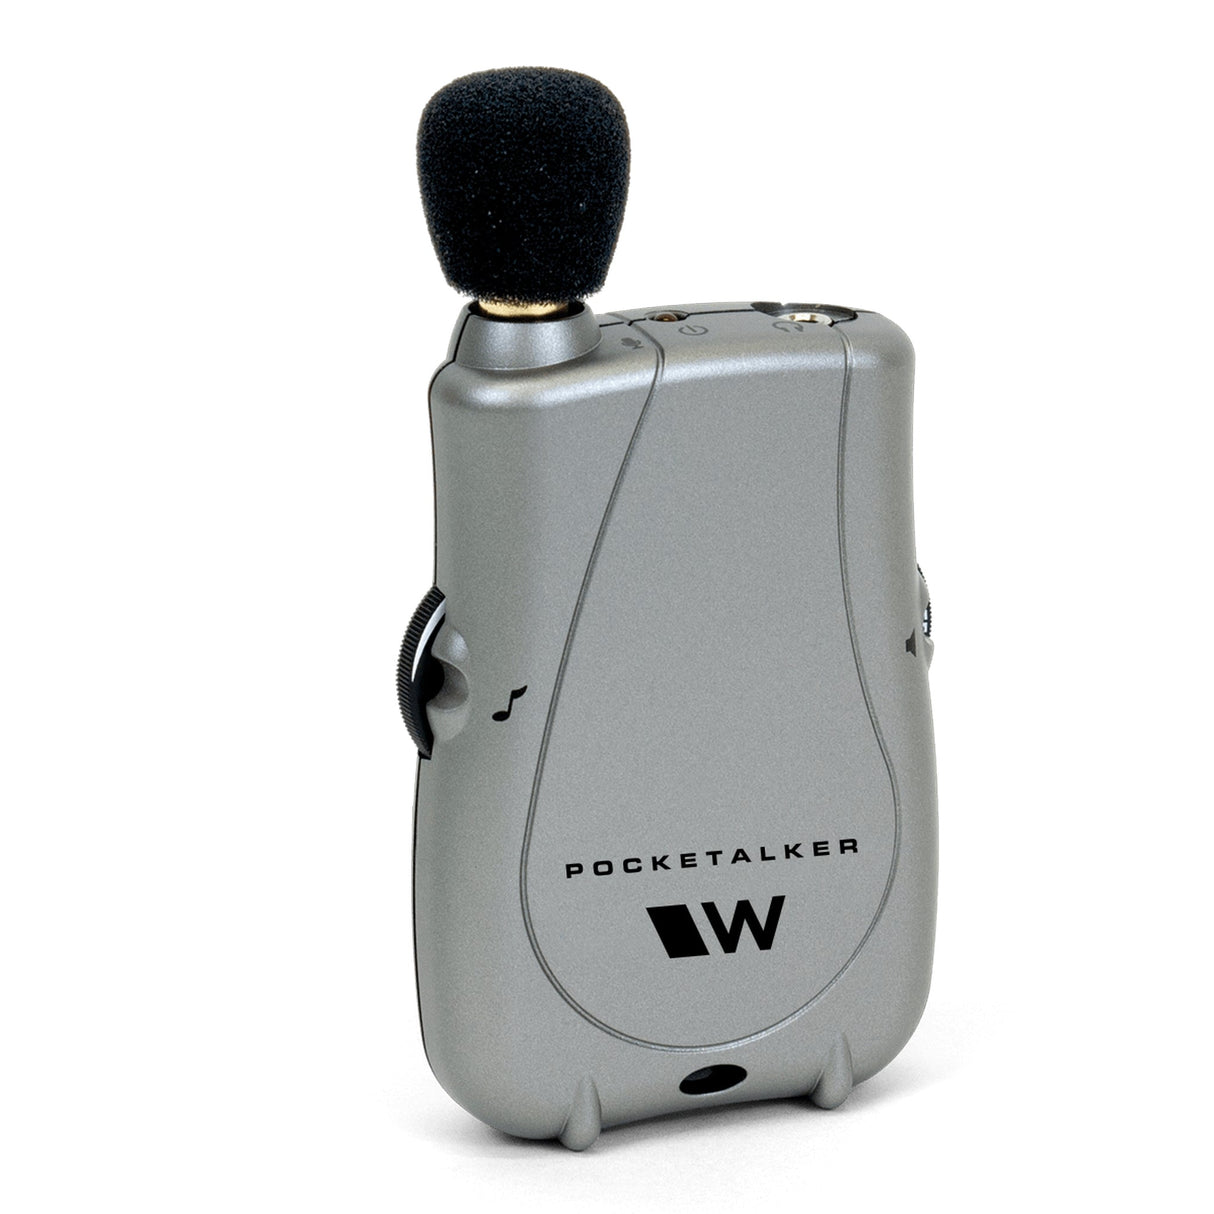 Williams AV PKT D1 EH Pocketalker Ultra Sound Amplifier System